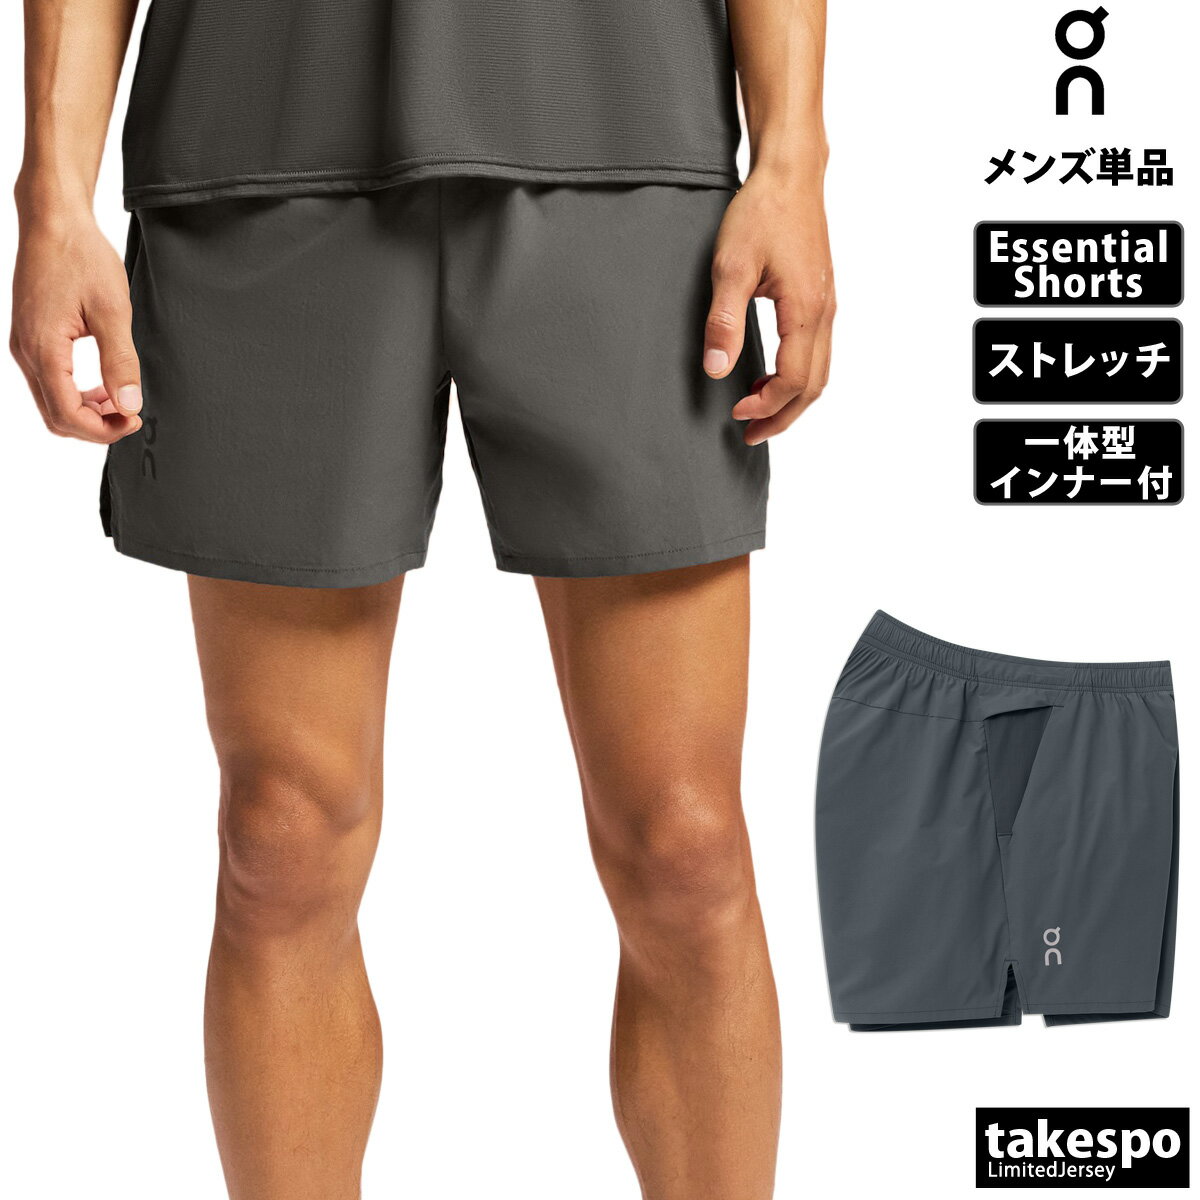 オン Essential Shorts エッセンシャルショーツ 新作 ショートパンツ 下 メンズ On ストレッチ トレーニング ランニング 一体型インナー 1ME11520345M 灰色 グレー| 大きいサイズ 有 スポーツ…